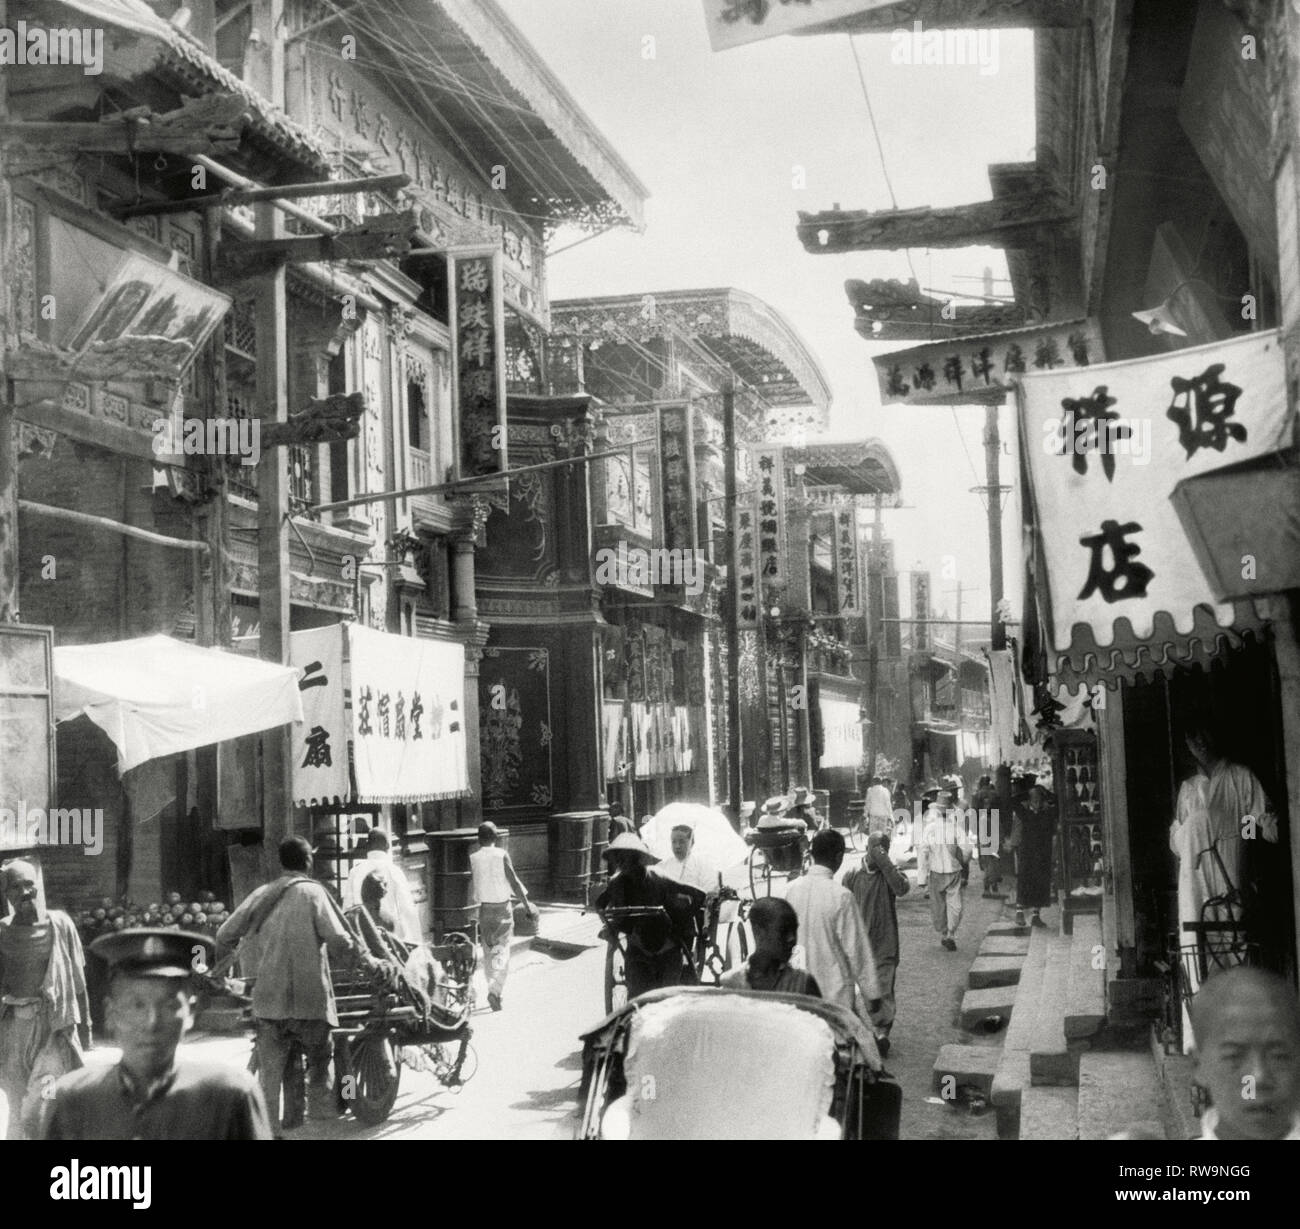 Scène de rue, Shanghai, Chine, 1922 Banque D'Images